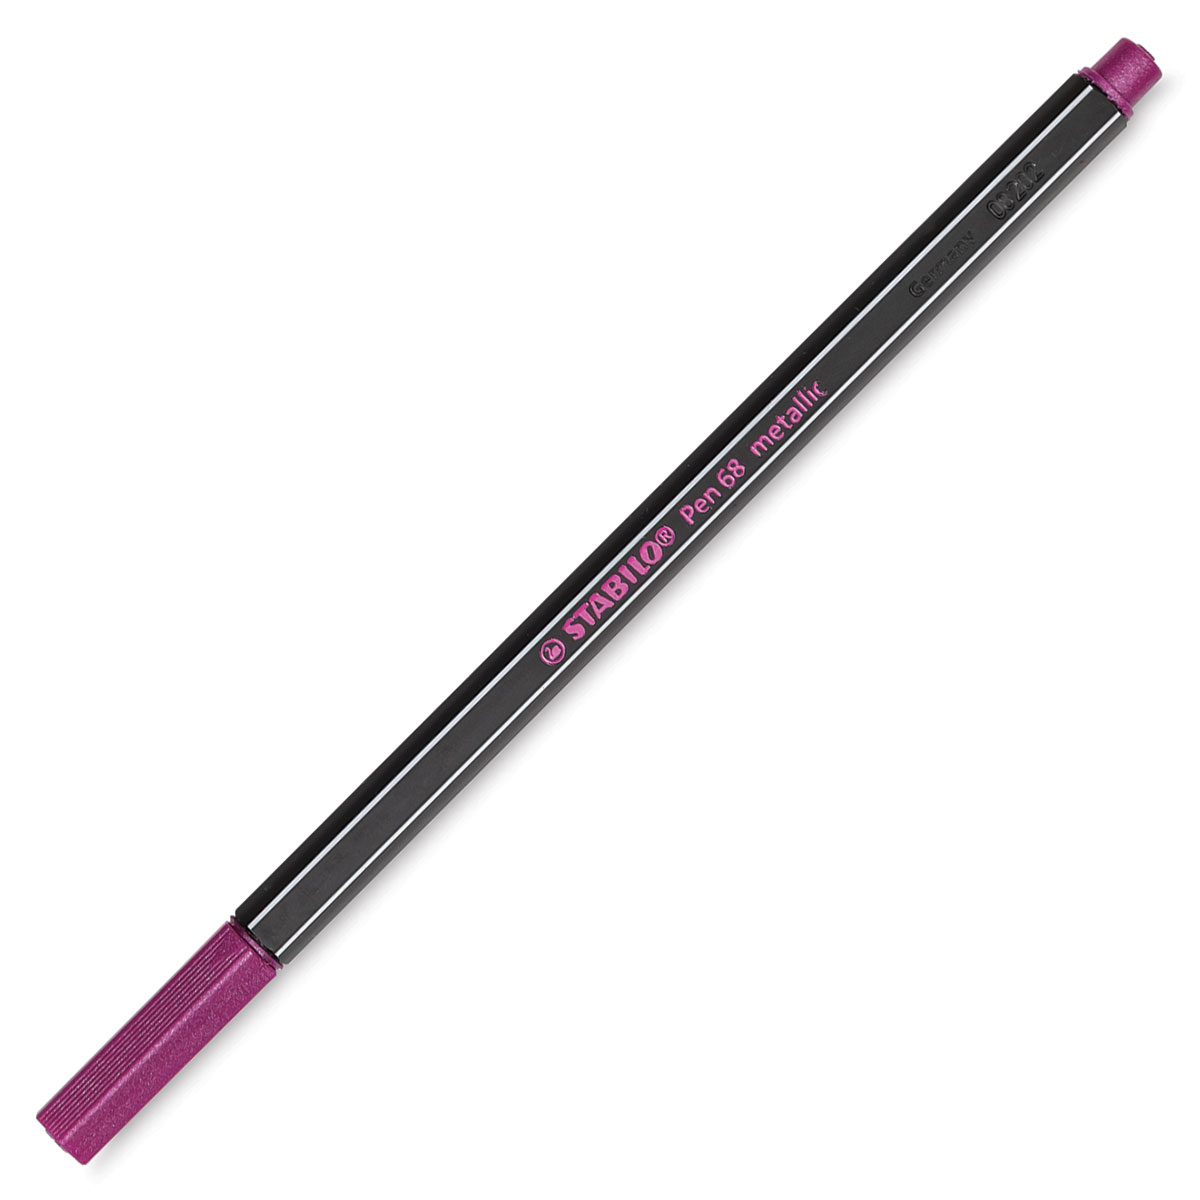 Buy STABILO Colour pen STABILO Pen 68 ColorParade 6820-04 Multi